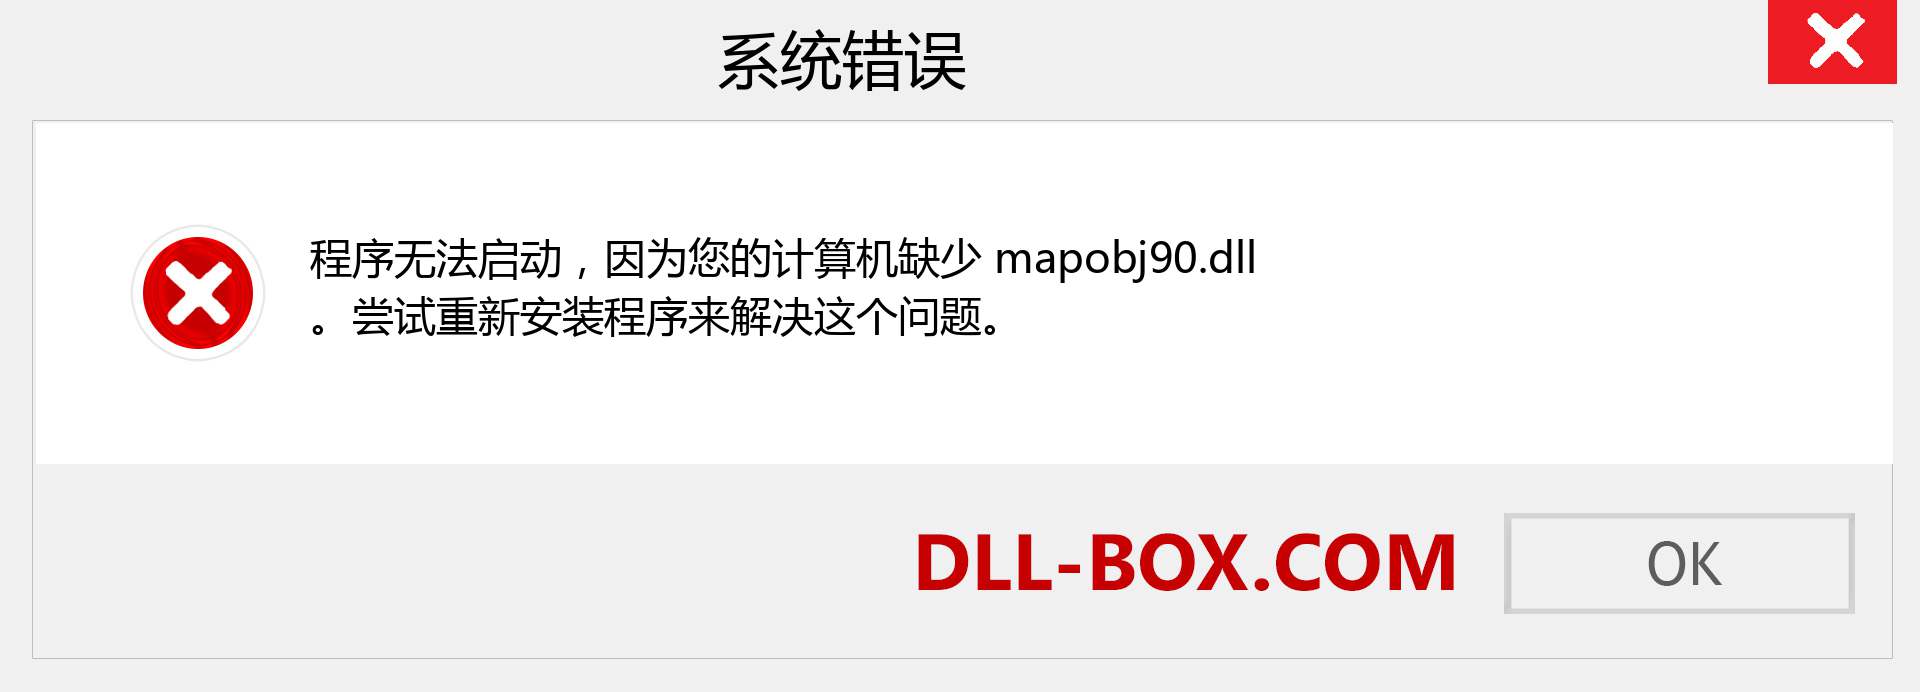 mapobj90.dll 文件丢失？。 适用于 Windows 7、8、10 的下载 - 修复 Windows、照片、图像上的 mapobj90 dll 丢失错误